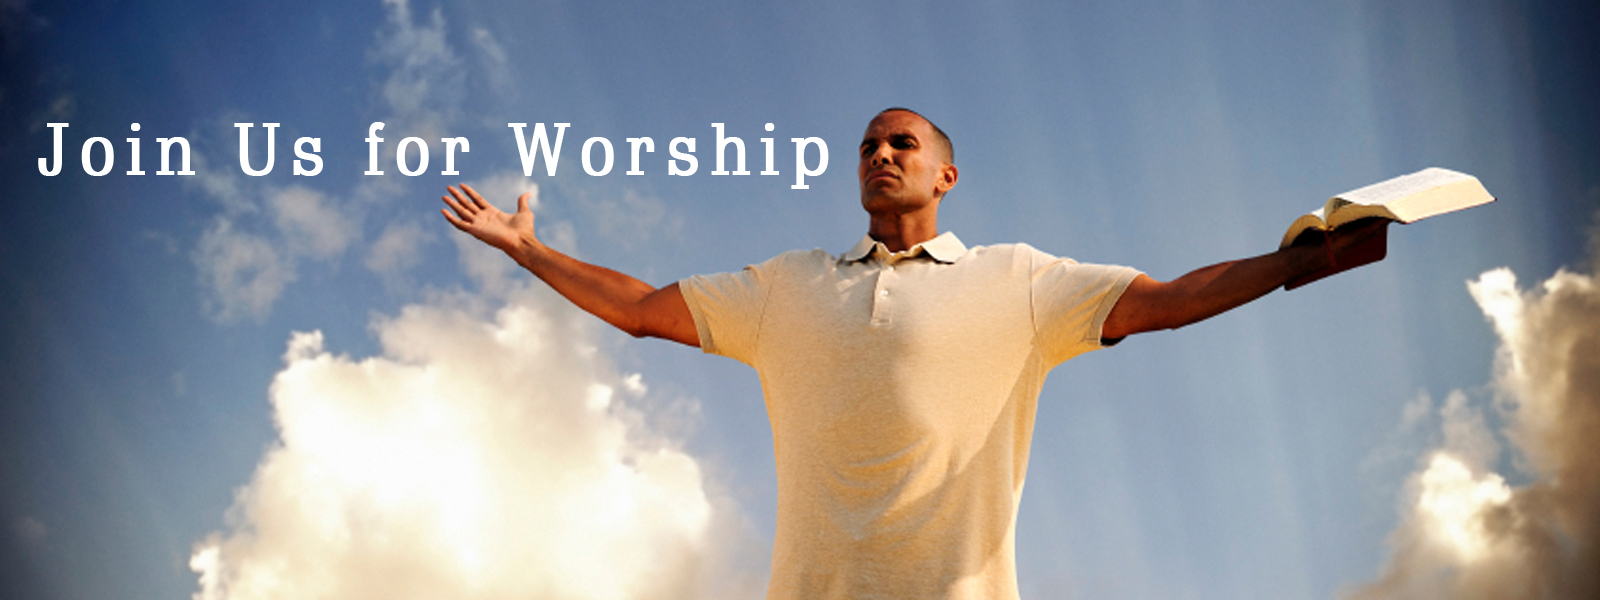 Come Worship